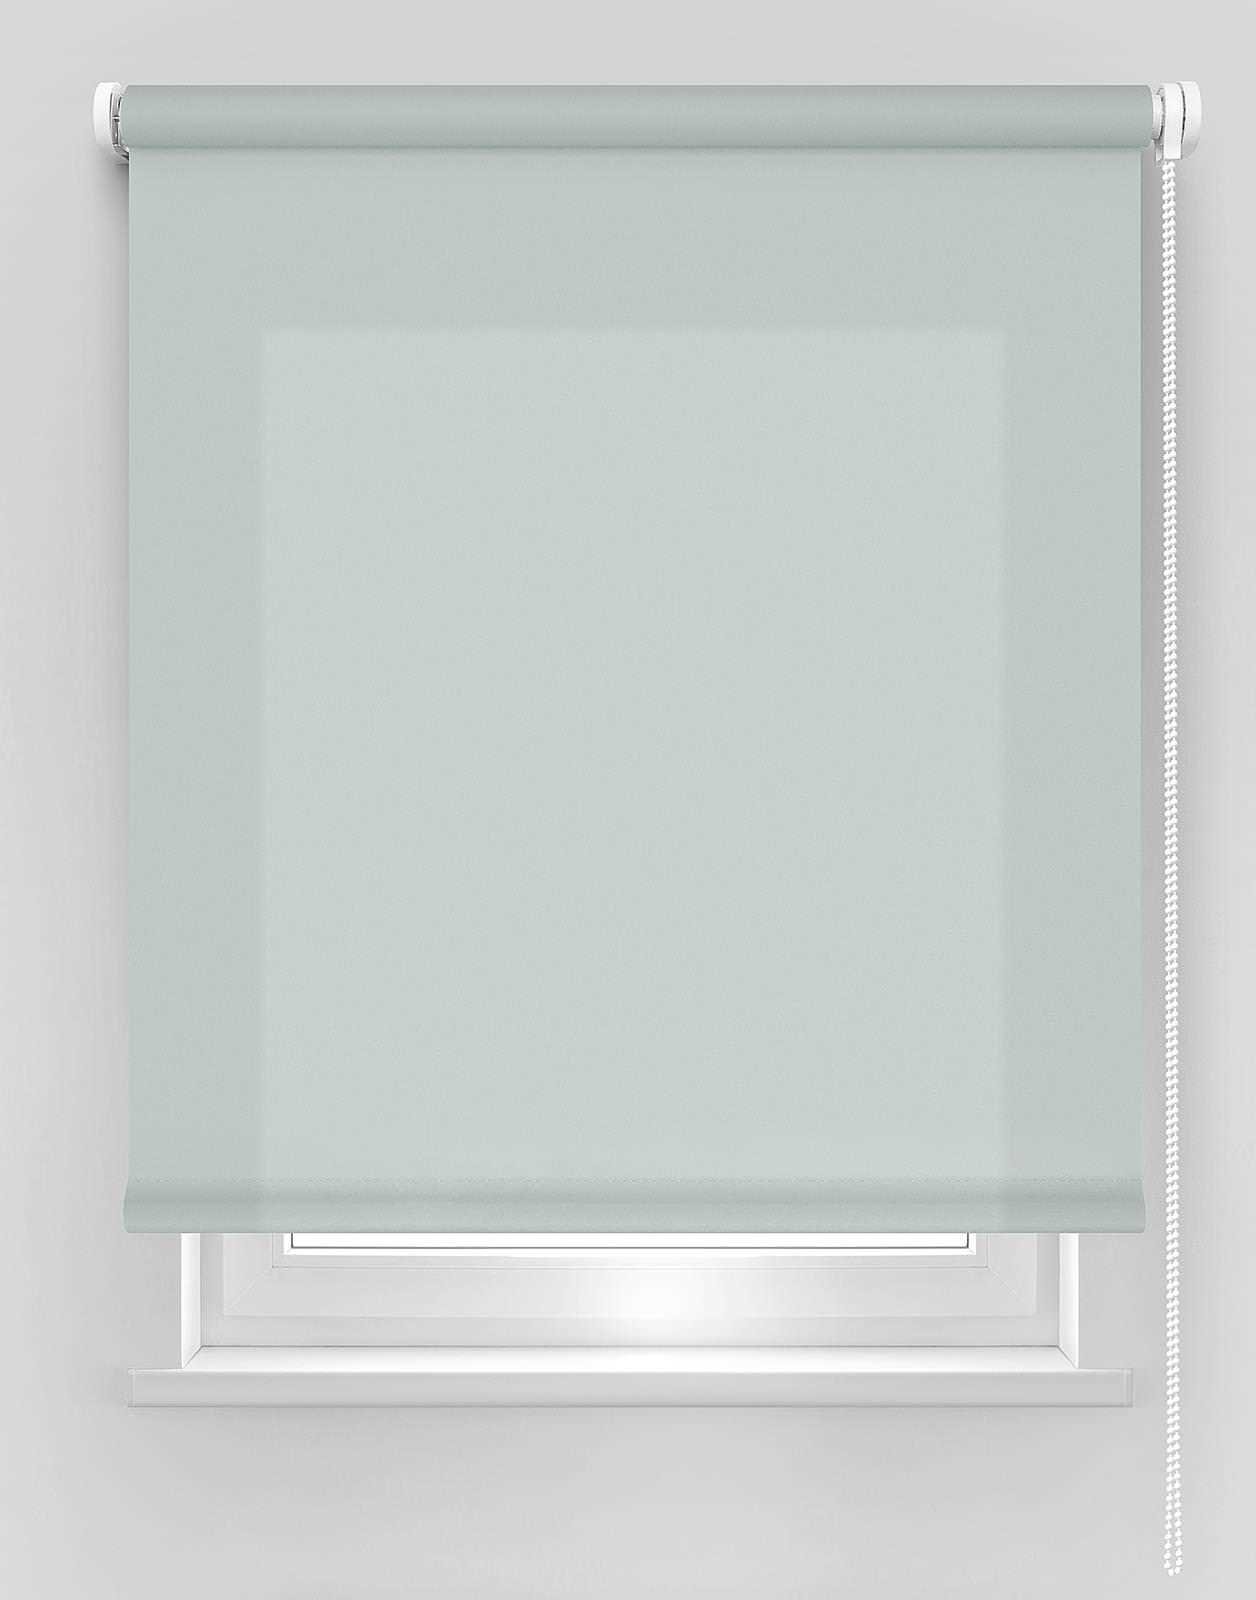 Klasikinė ritininė užuolaida DEKORIKA, pilkos sp., Ø 25 mm, 240 x 175 cm, 100 % PES - 1